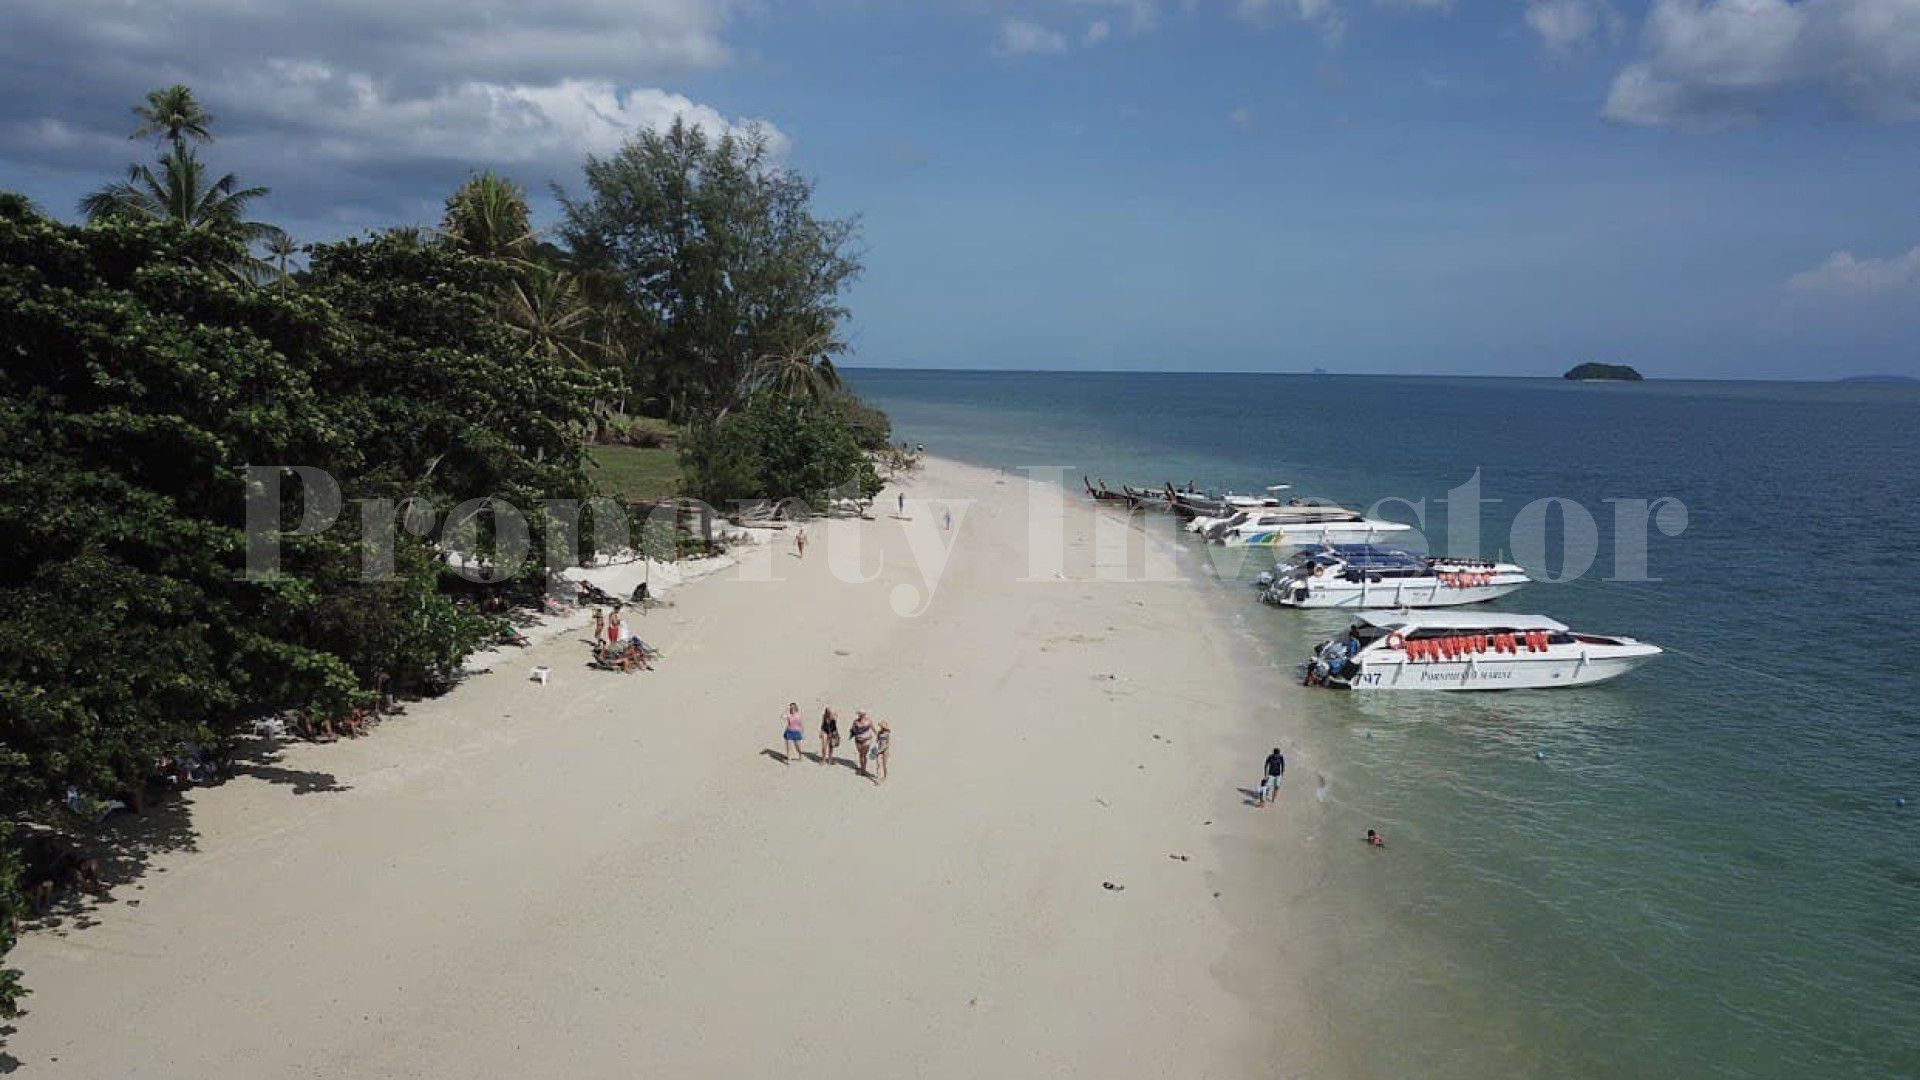 Продаётся частный дикий райский остров 44,5 га под строительство в Тайланде